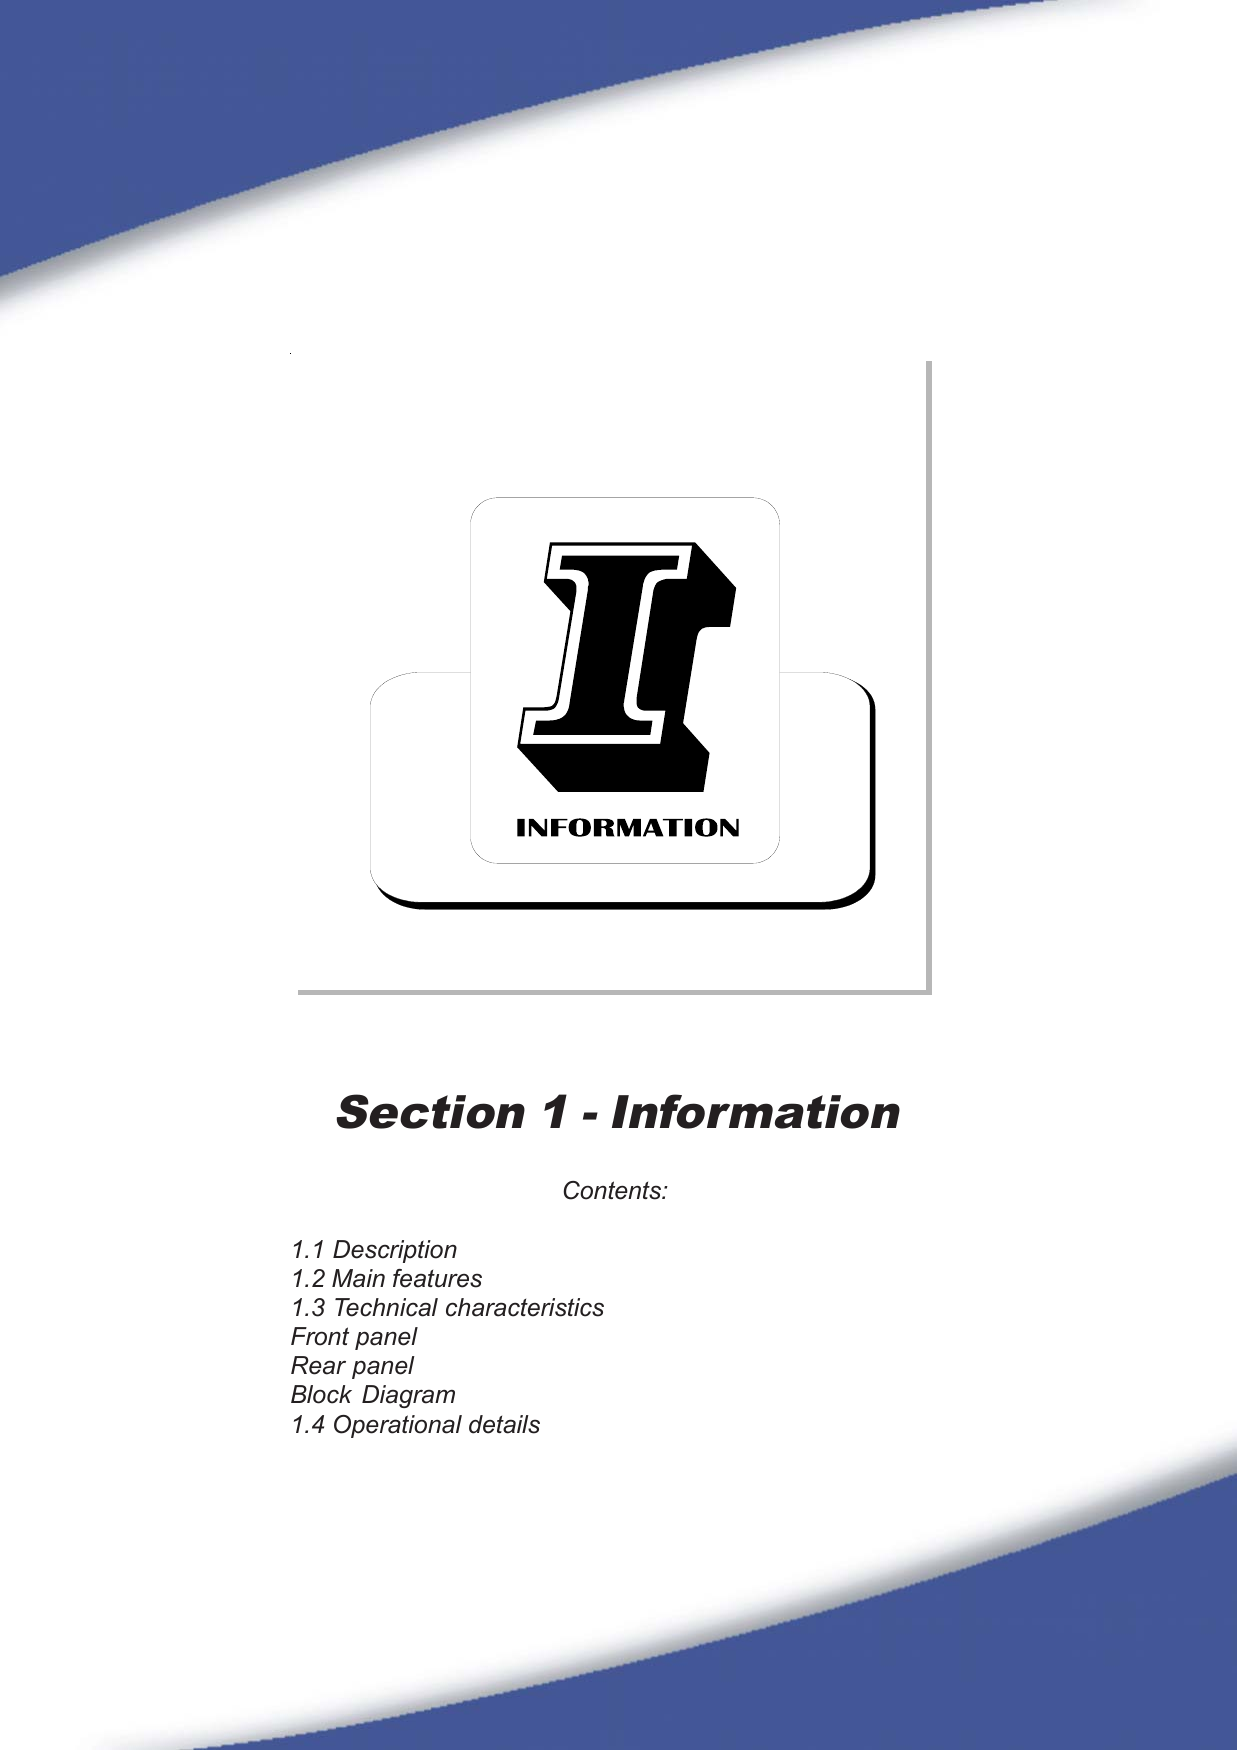 17Section 1 - InformationContents:1.1 Description1.2 Main features1.3 Technical characteristicsFront panelRear panelBlock Diagram1.4 Operational details